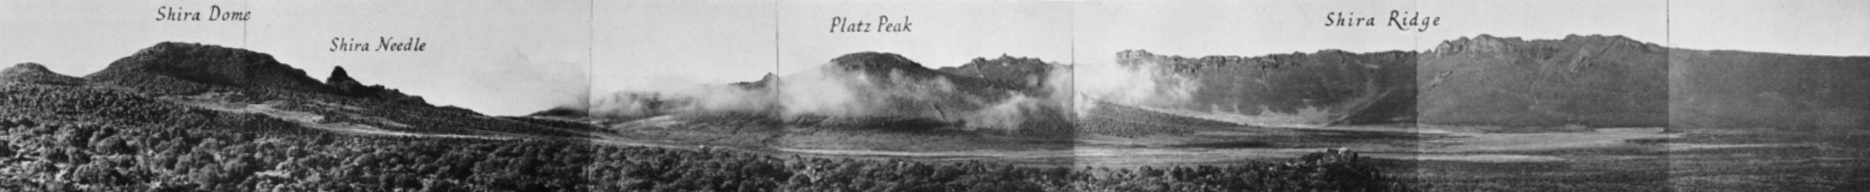 Das Shira Platau 1948.Mit dem zentralem Platzkegel - hier als Platz Peak bezeichnet. Ein Panoramabild aus Einzelaufnahmen von Georg Salt aus dem jahr 1948. [7]